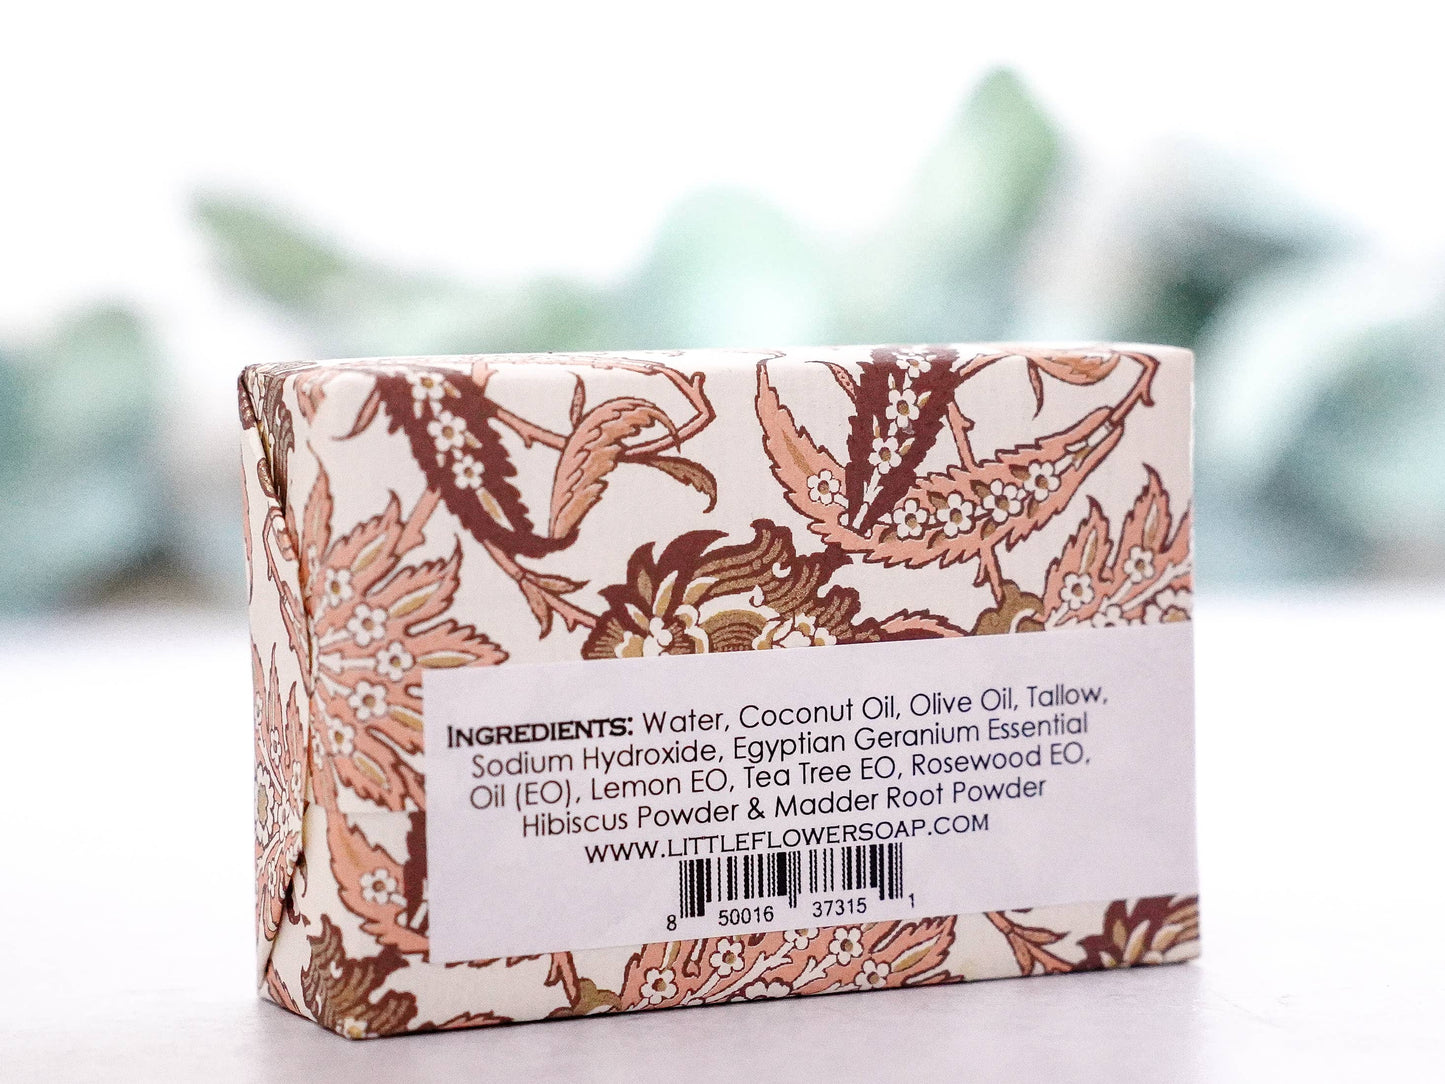 Hibiscus Rose Geranium Handmade Soap: 6 oz